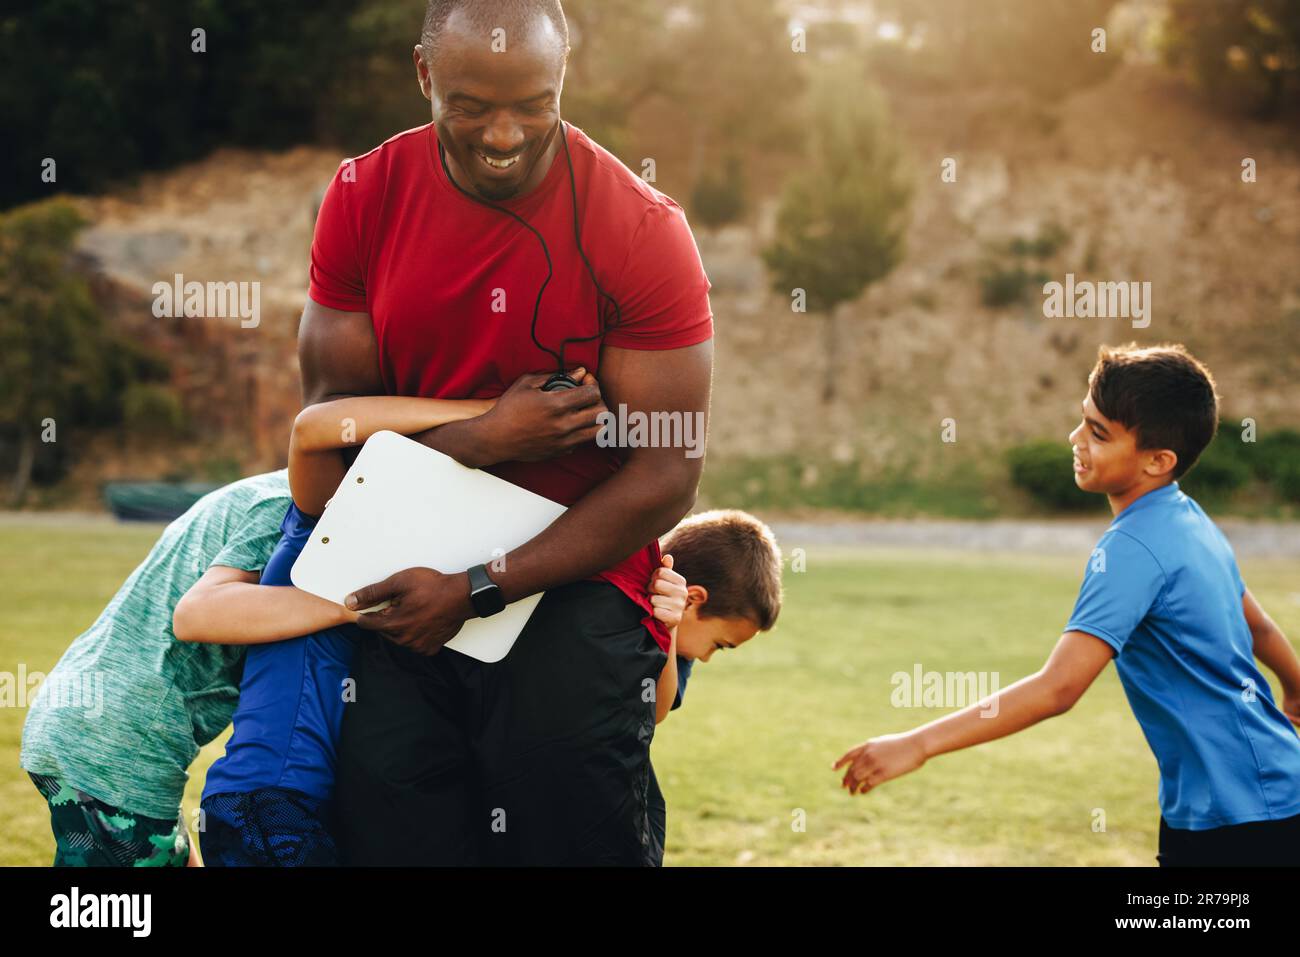 Kinder, die während eines Schultrainings mit ihrem Trainer spielen. Grundschüler, die Spaß an einem Sportunterricht haben. Sporttraini Stockfoto